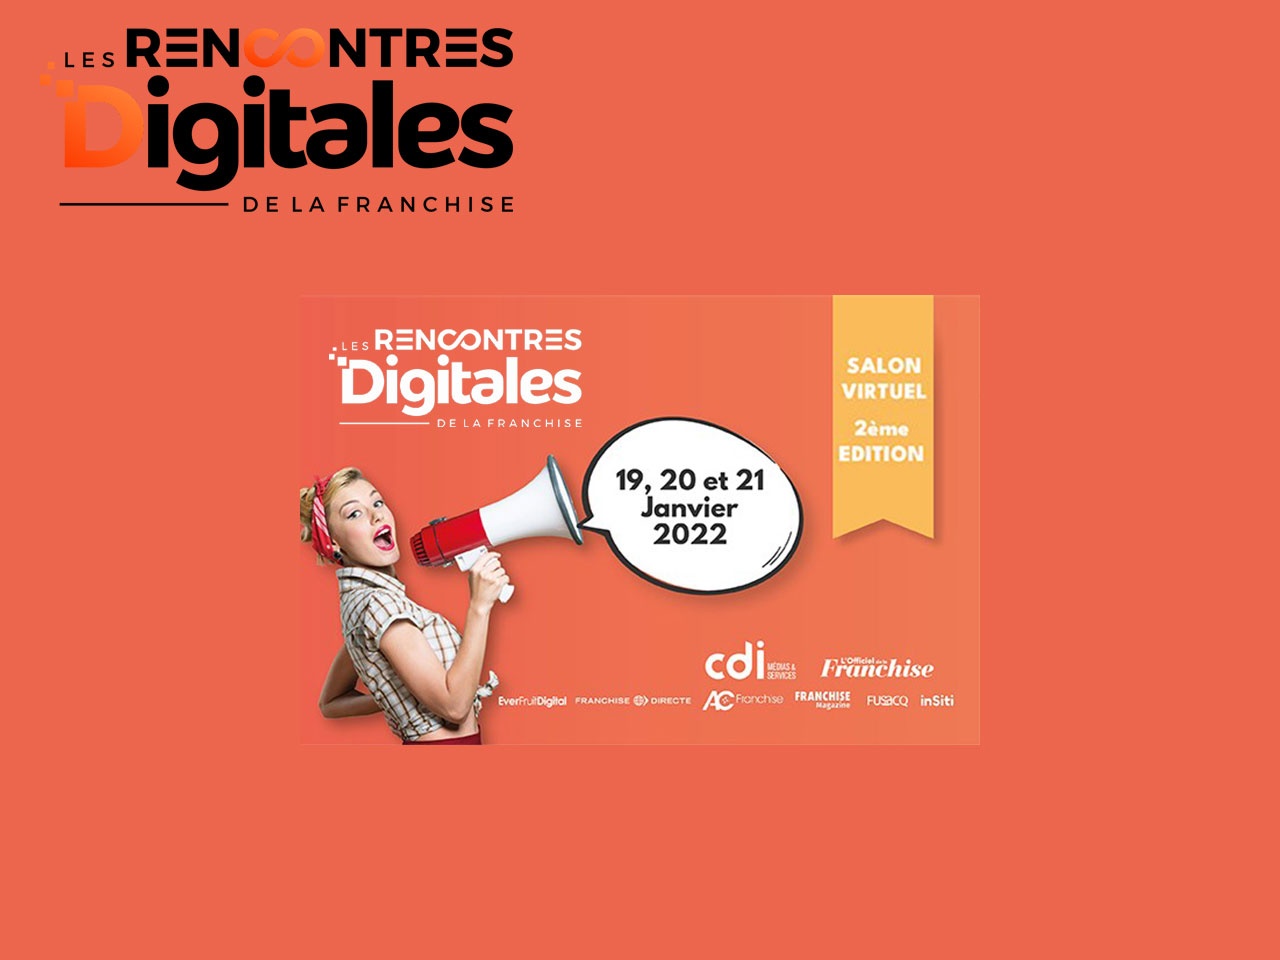 2nd édition des « RENCONTRES DIGITALES DE LA FRANCHISE » du 19 au 21 janvier 2022